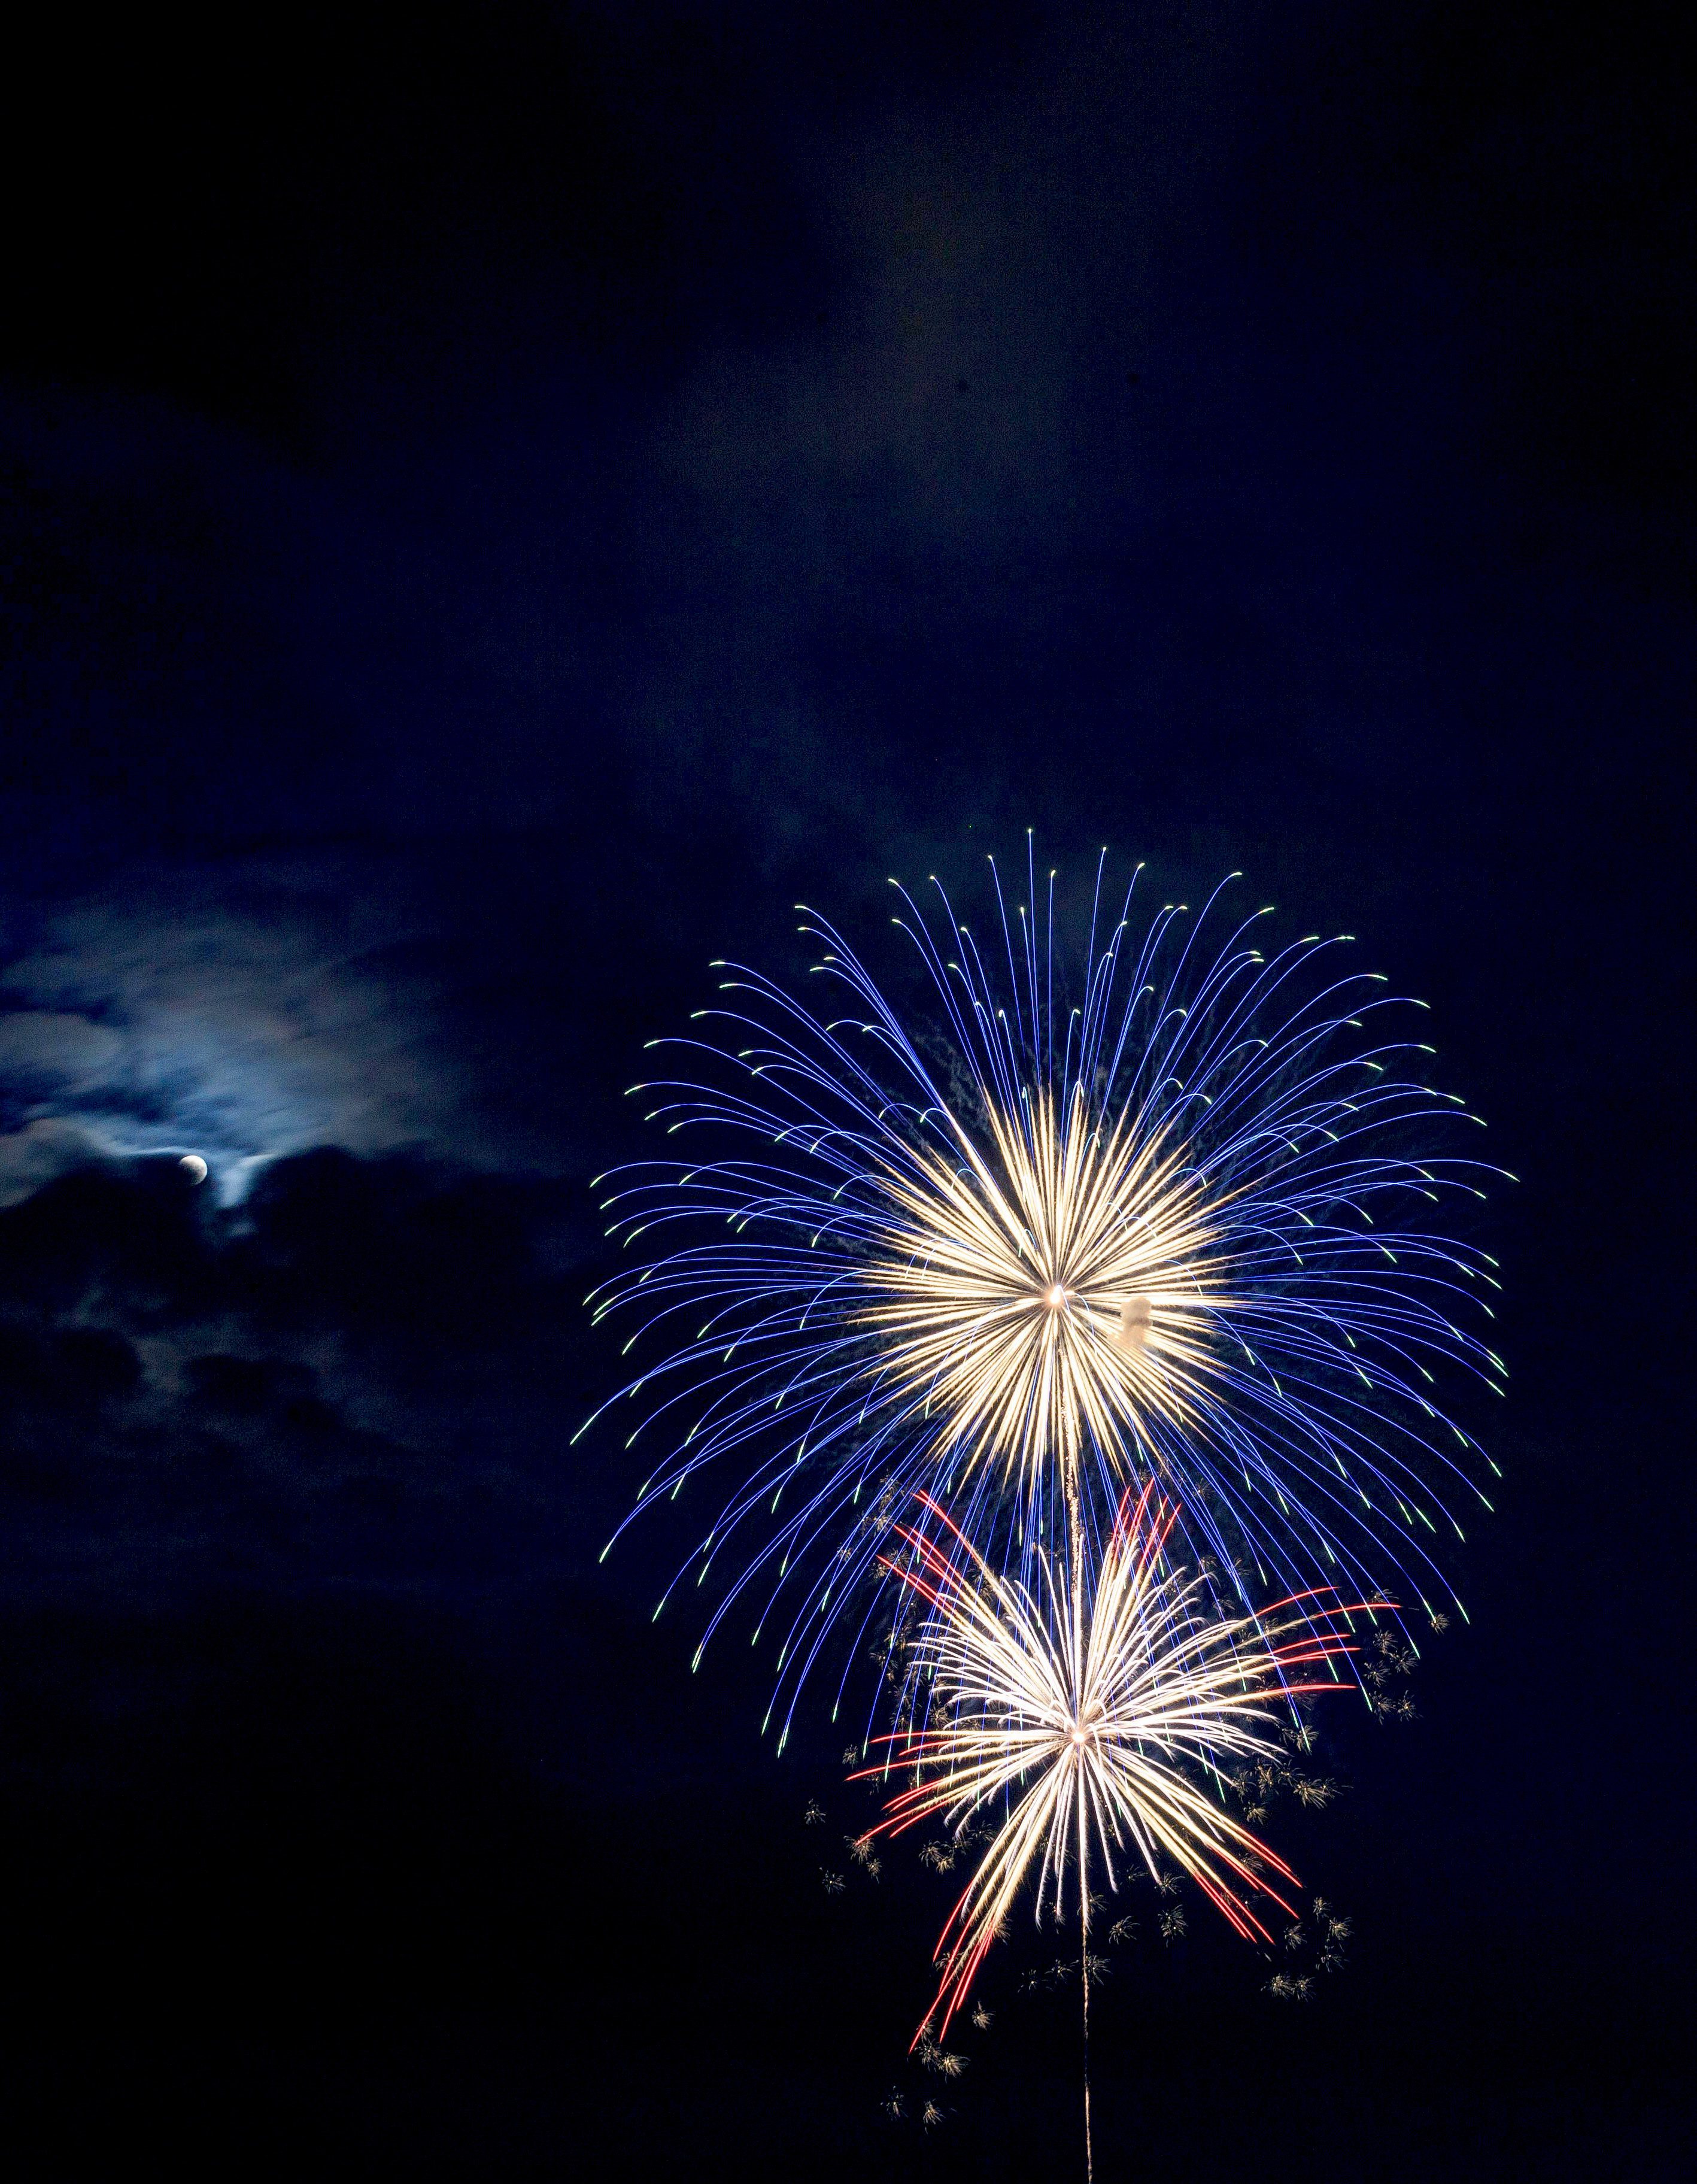 fireworks in the dark sky